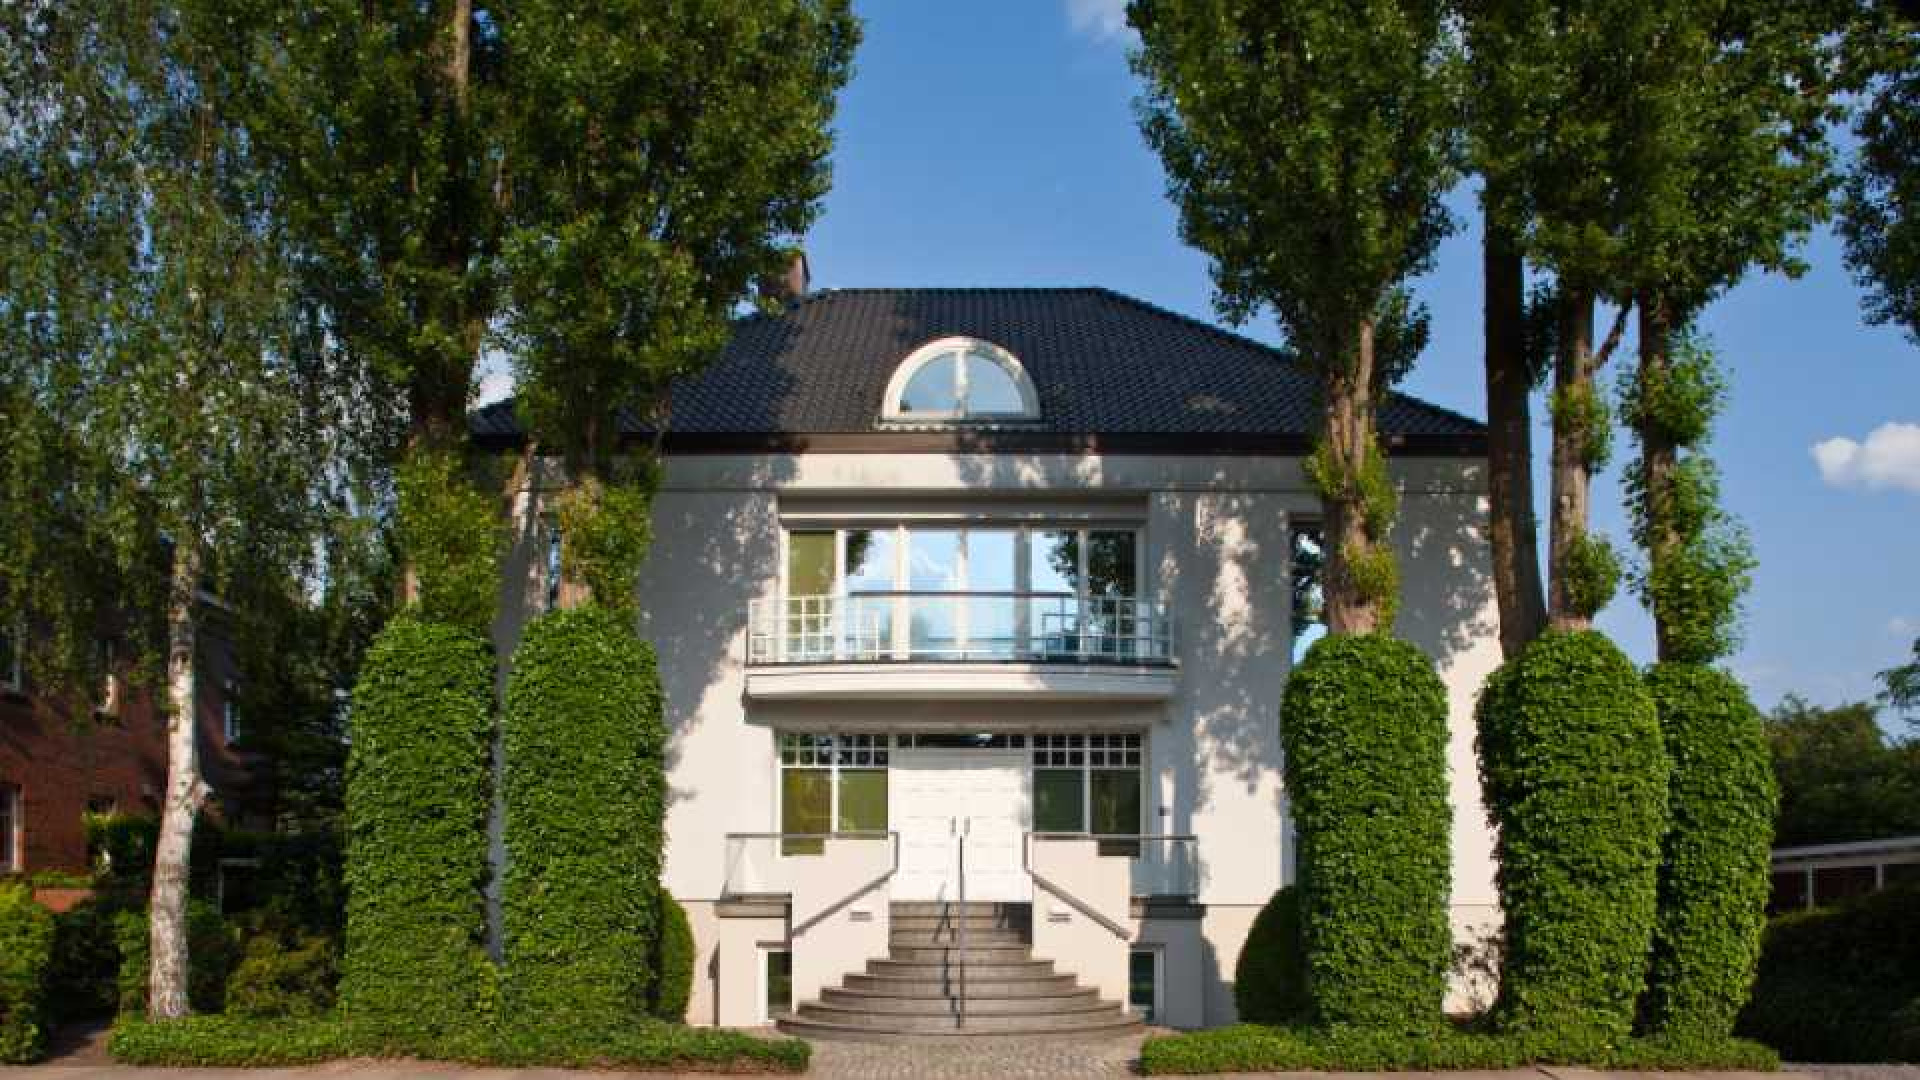 Korting op huur Hamburgse villa Sabia Engizek. Zie foto's